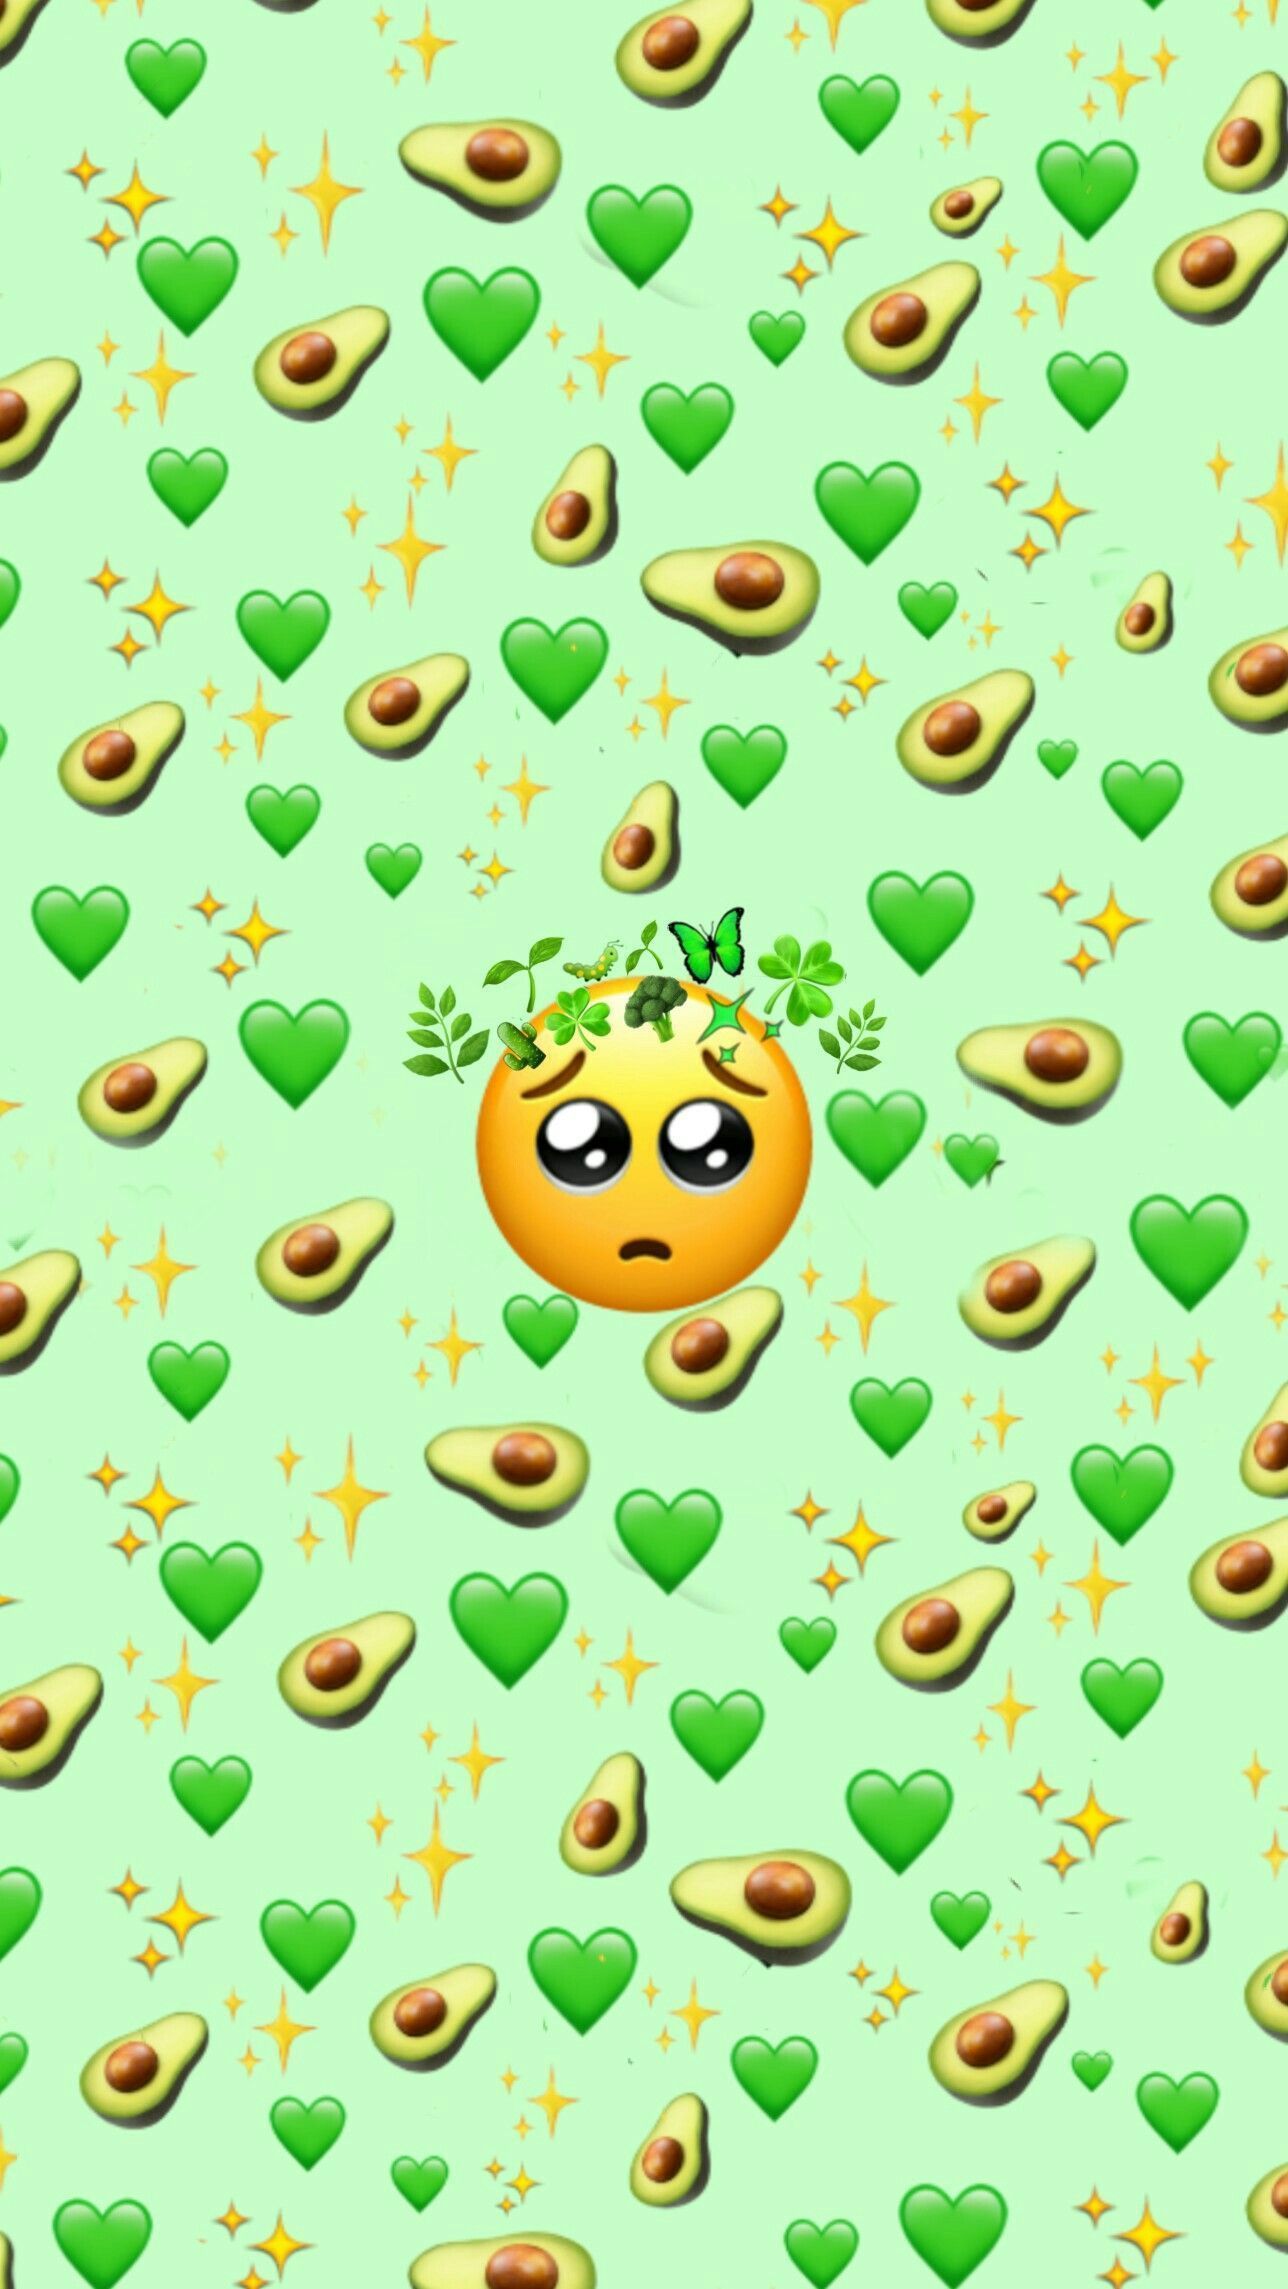 Green Emoji background. Fond d'ecran dessin, Fond d'écran coloré, Fond d'ecran pastel